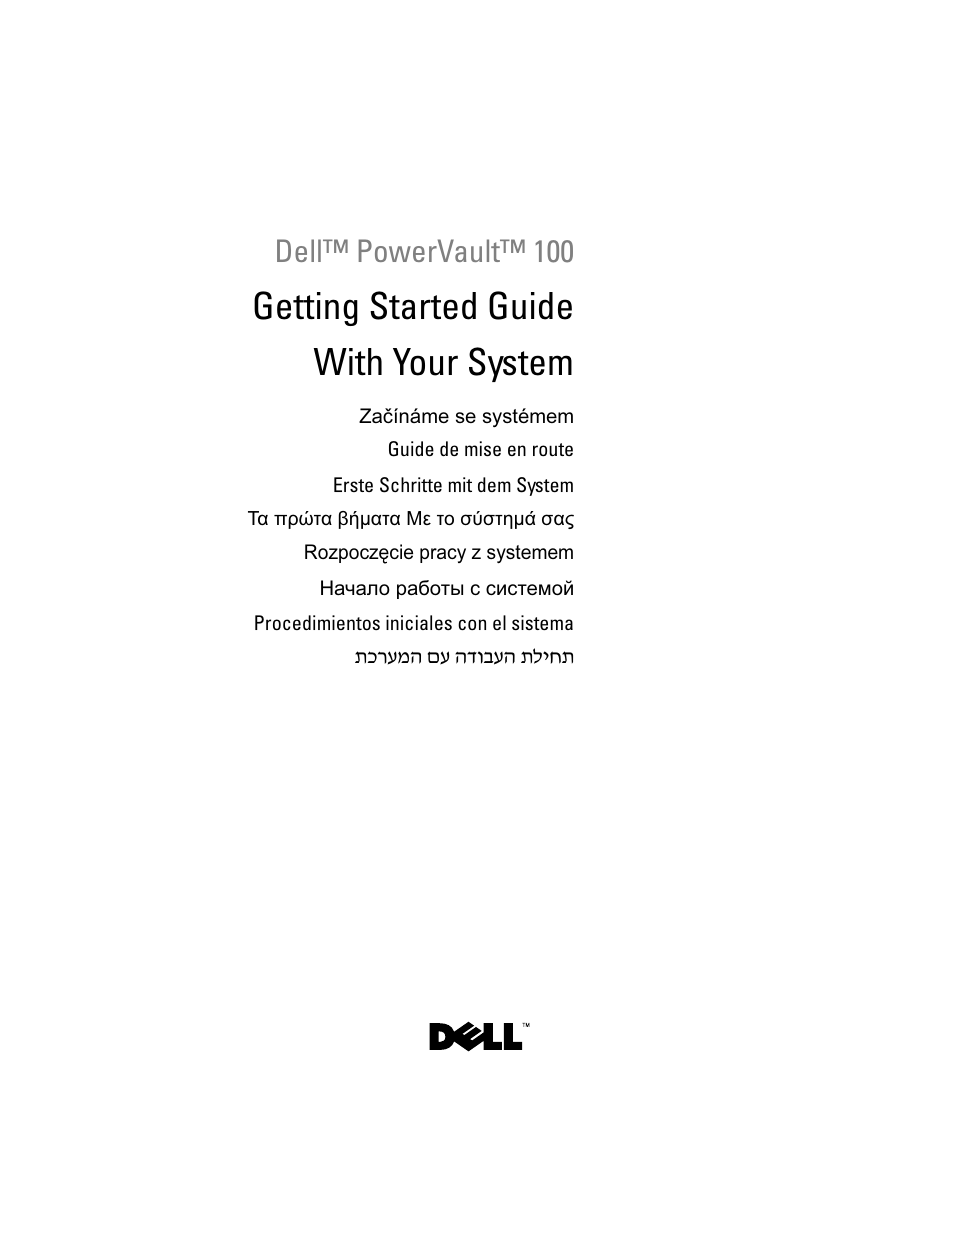 Инструкция по эксплуатации Dell PowerVault DP100 | 162 страницы